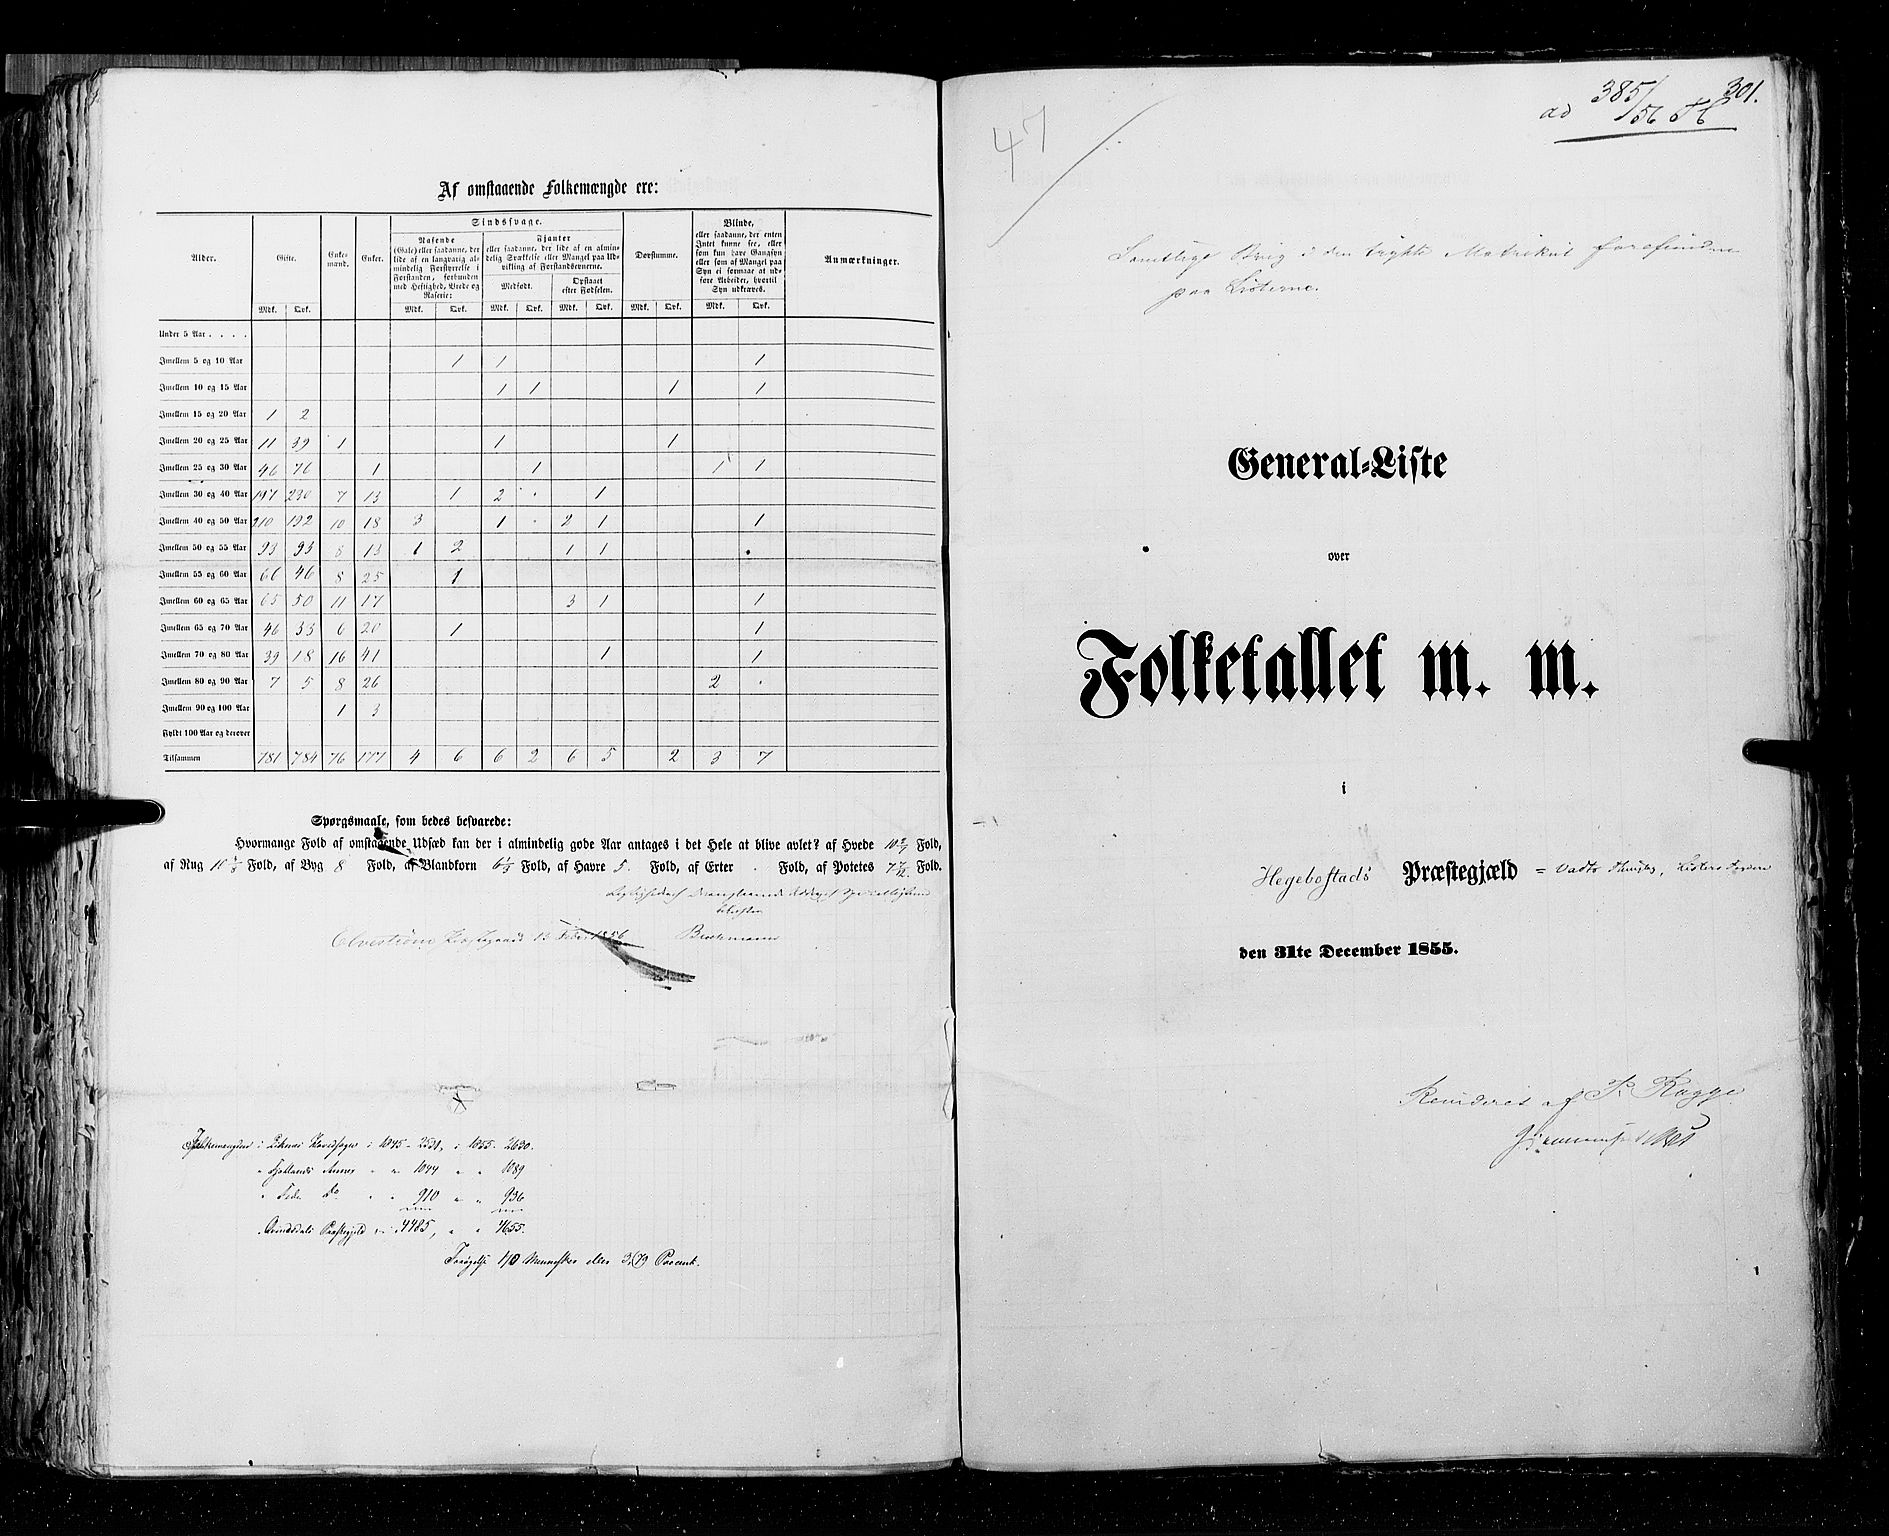 RA, Census 1855, vol. 3: Bratsberg amt, Nedenes amt og Lister og Mandal amt, 1855, p. 301